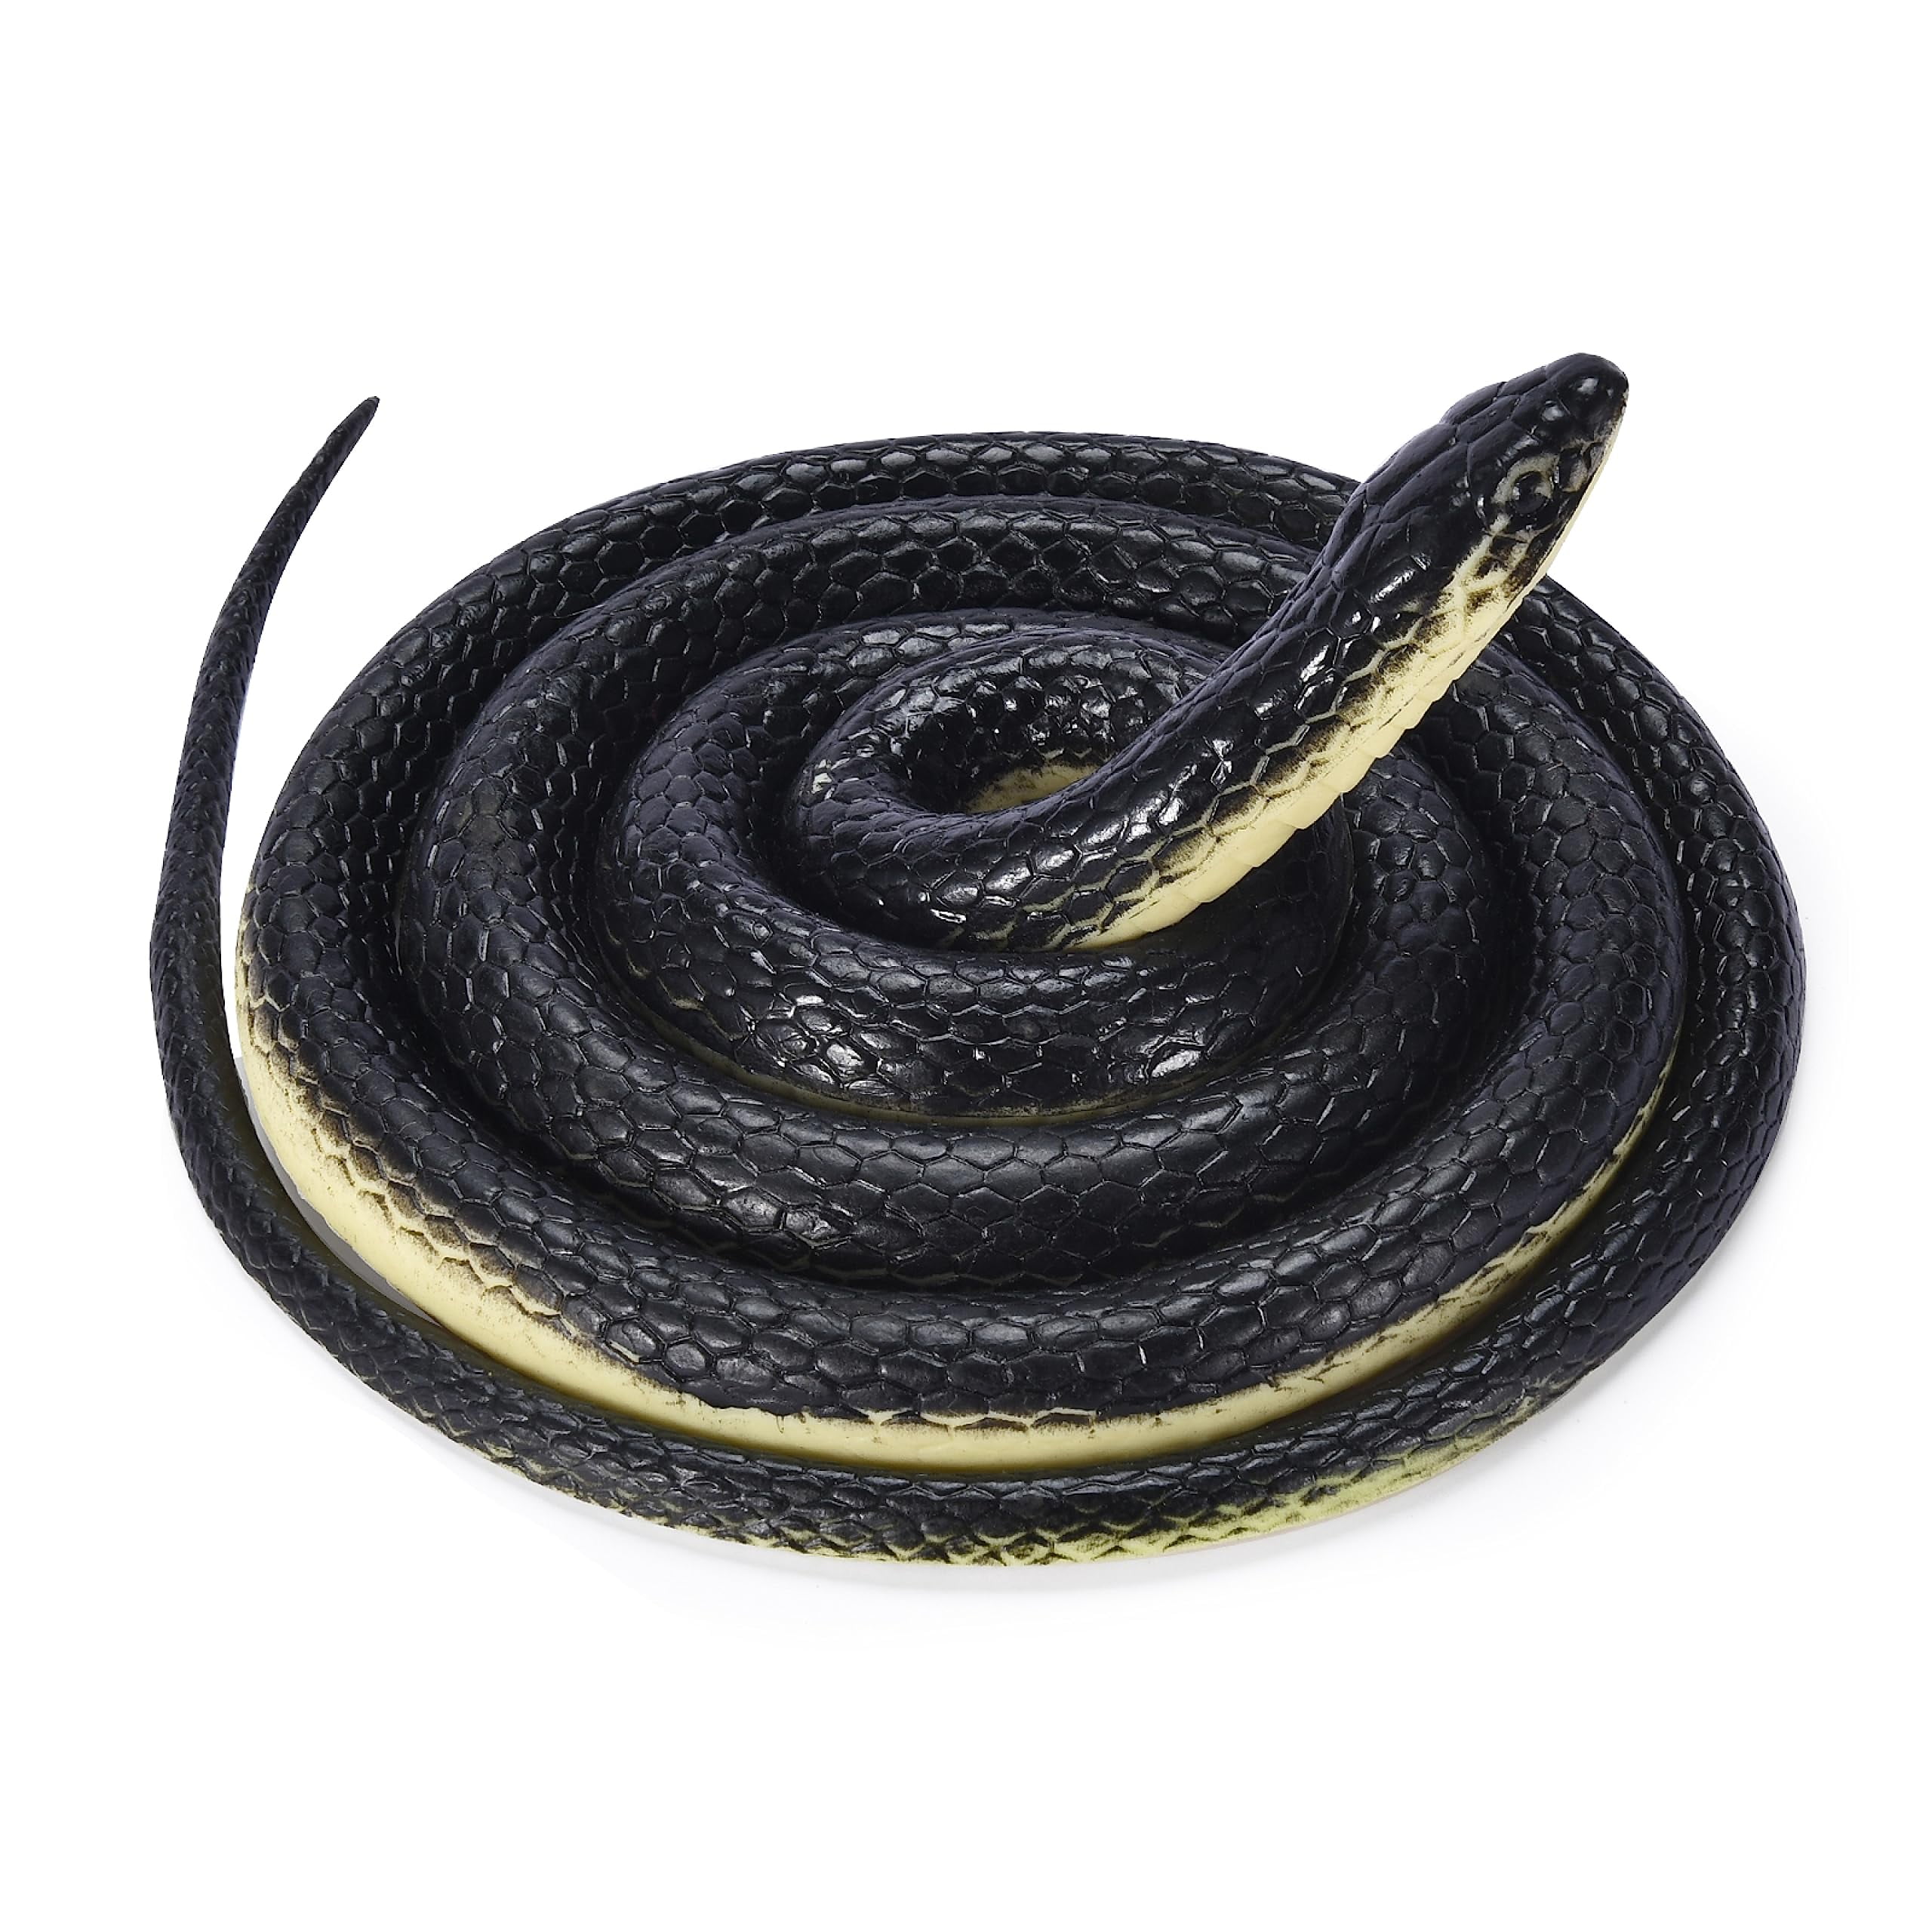 Homarden Realistic Rubber Snakes - Fake Snake Toys - Garden Prop to ...